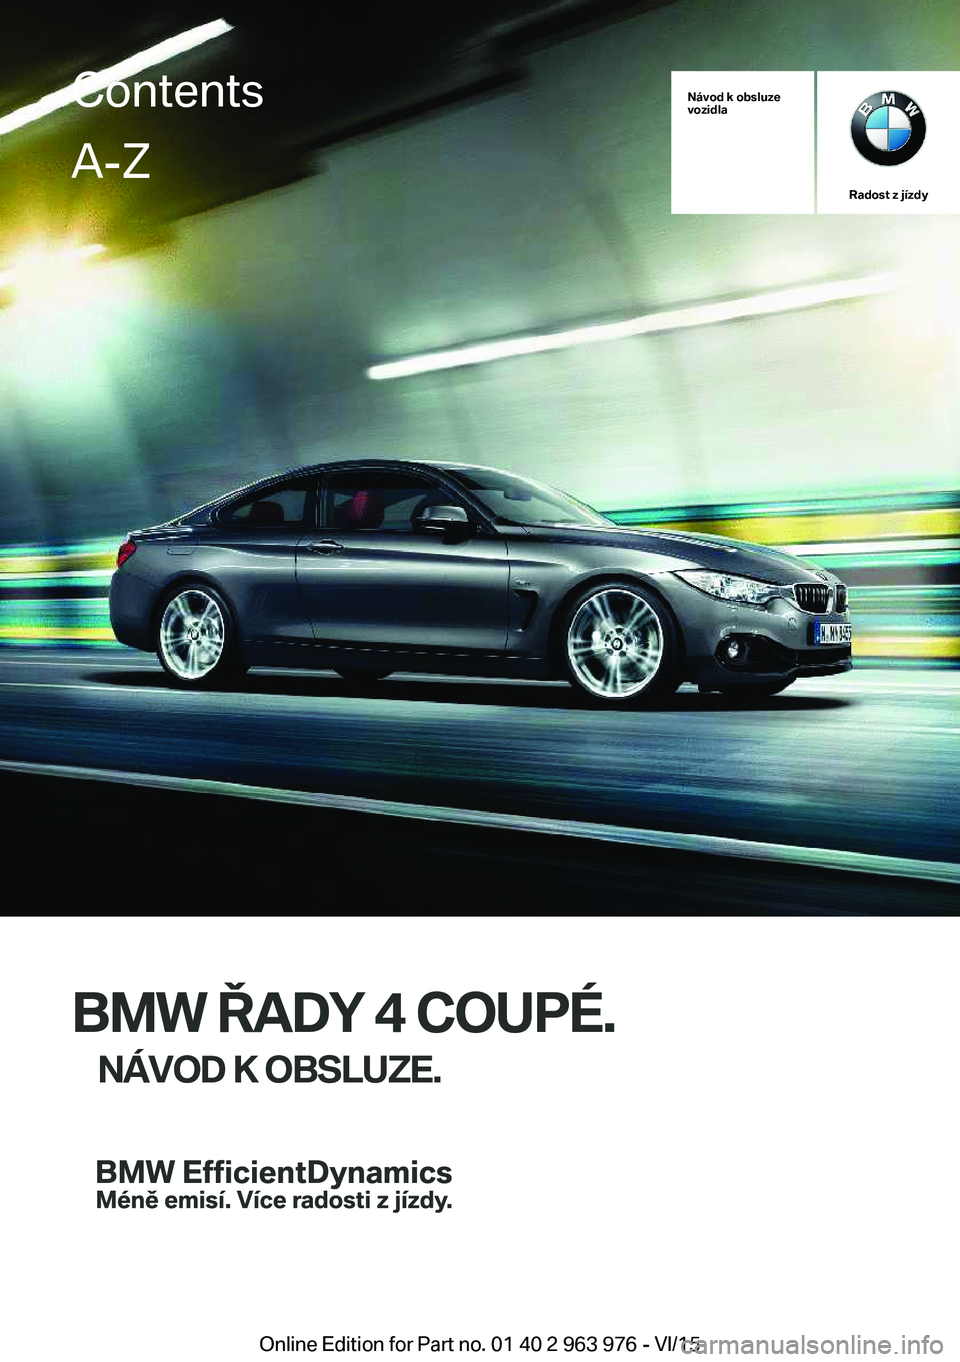 BMW 4 SERIES COUPE 2016  Návod na použití (in Czech) Návod k obsluze
vozidla
Radost z jízdy
BMW ŘADY 4 COUPÉ.
NÁVOD K OBSLUZE.
ContentsA-Z
Online Edition for Part no. 01 40 2 963 976 - VI/15   